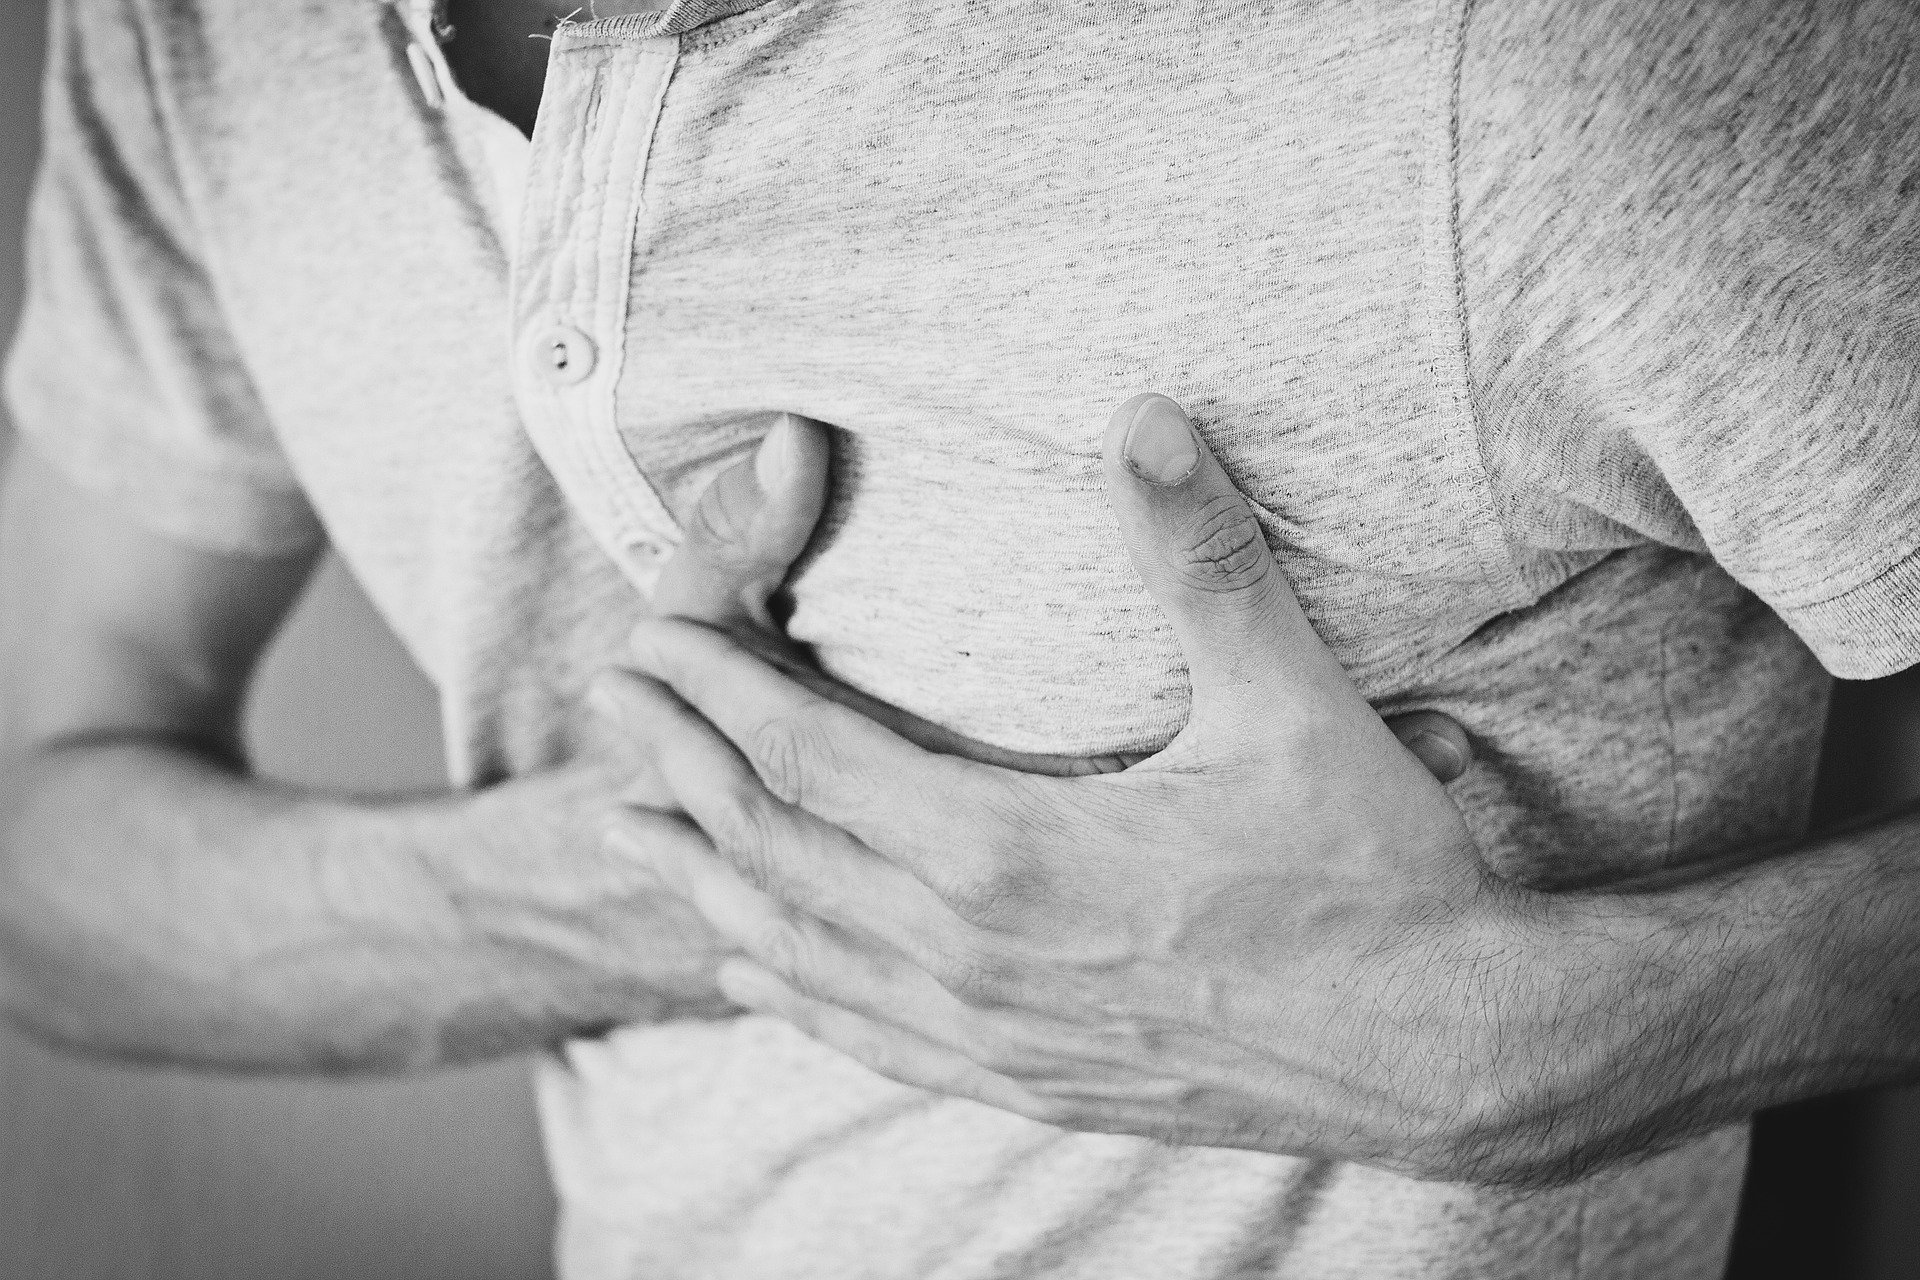 Cum acorzi primul ajutor in caz de infarct